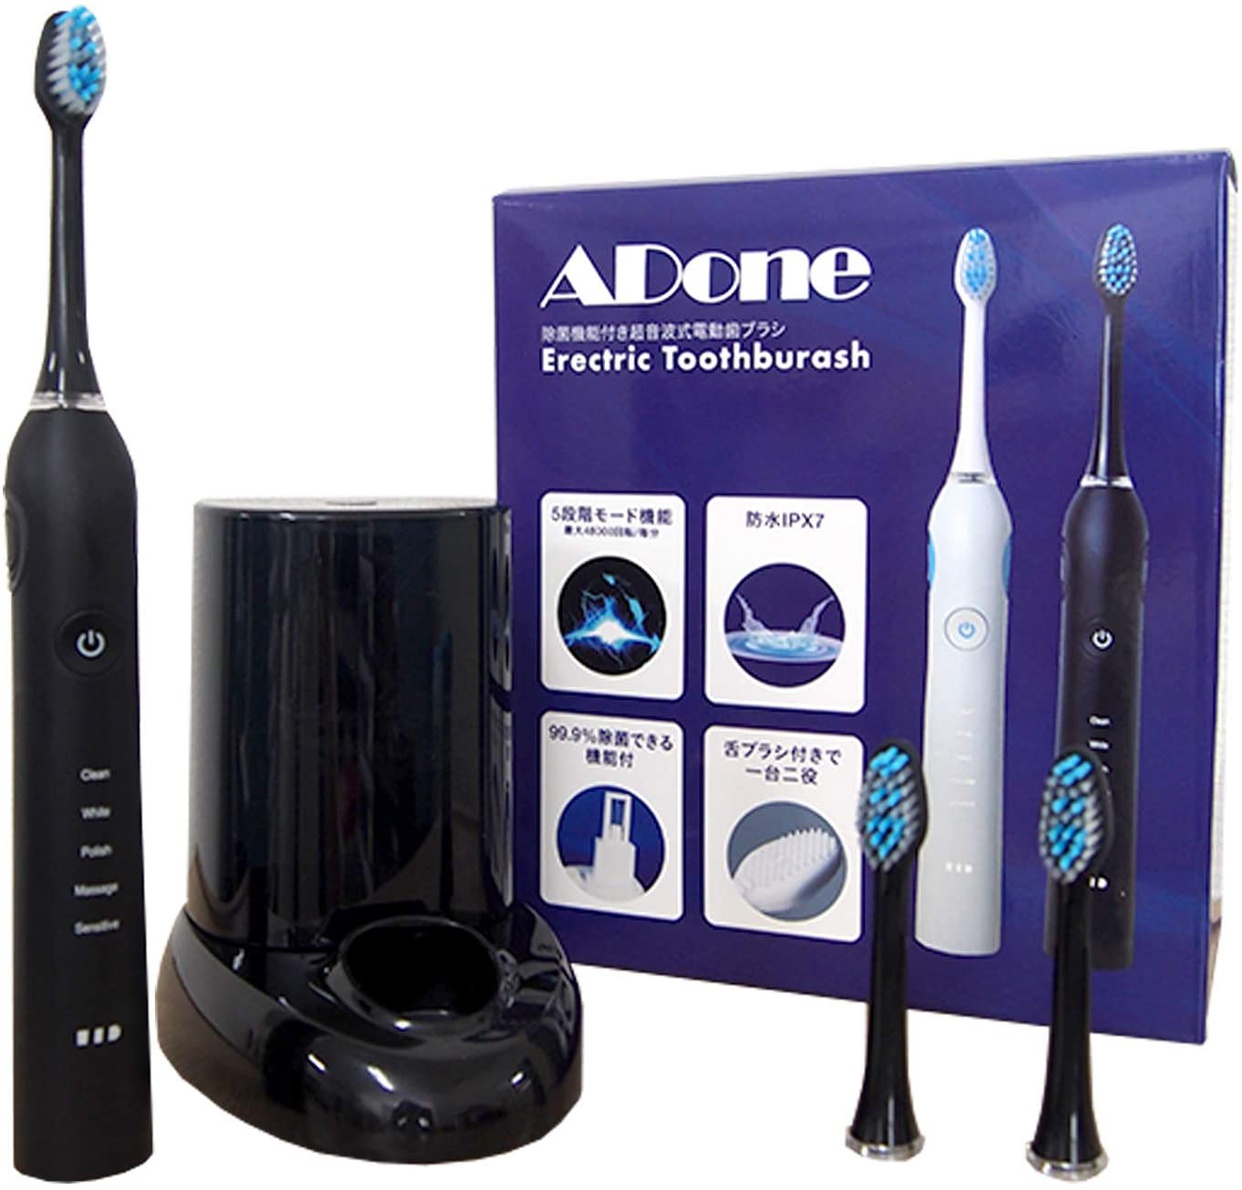 ADone(アドワン) 電動歯ブラシ